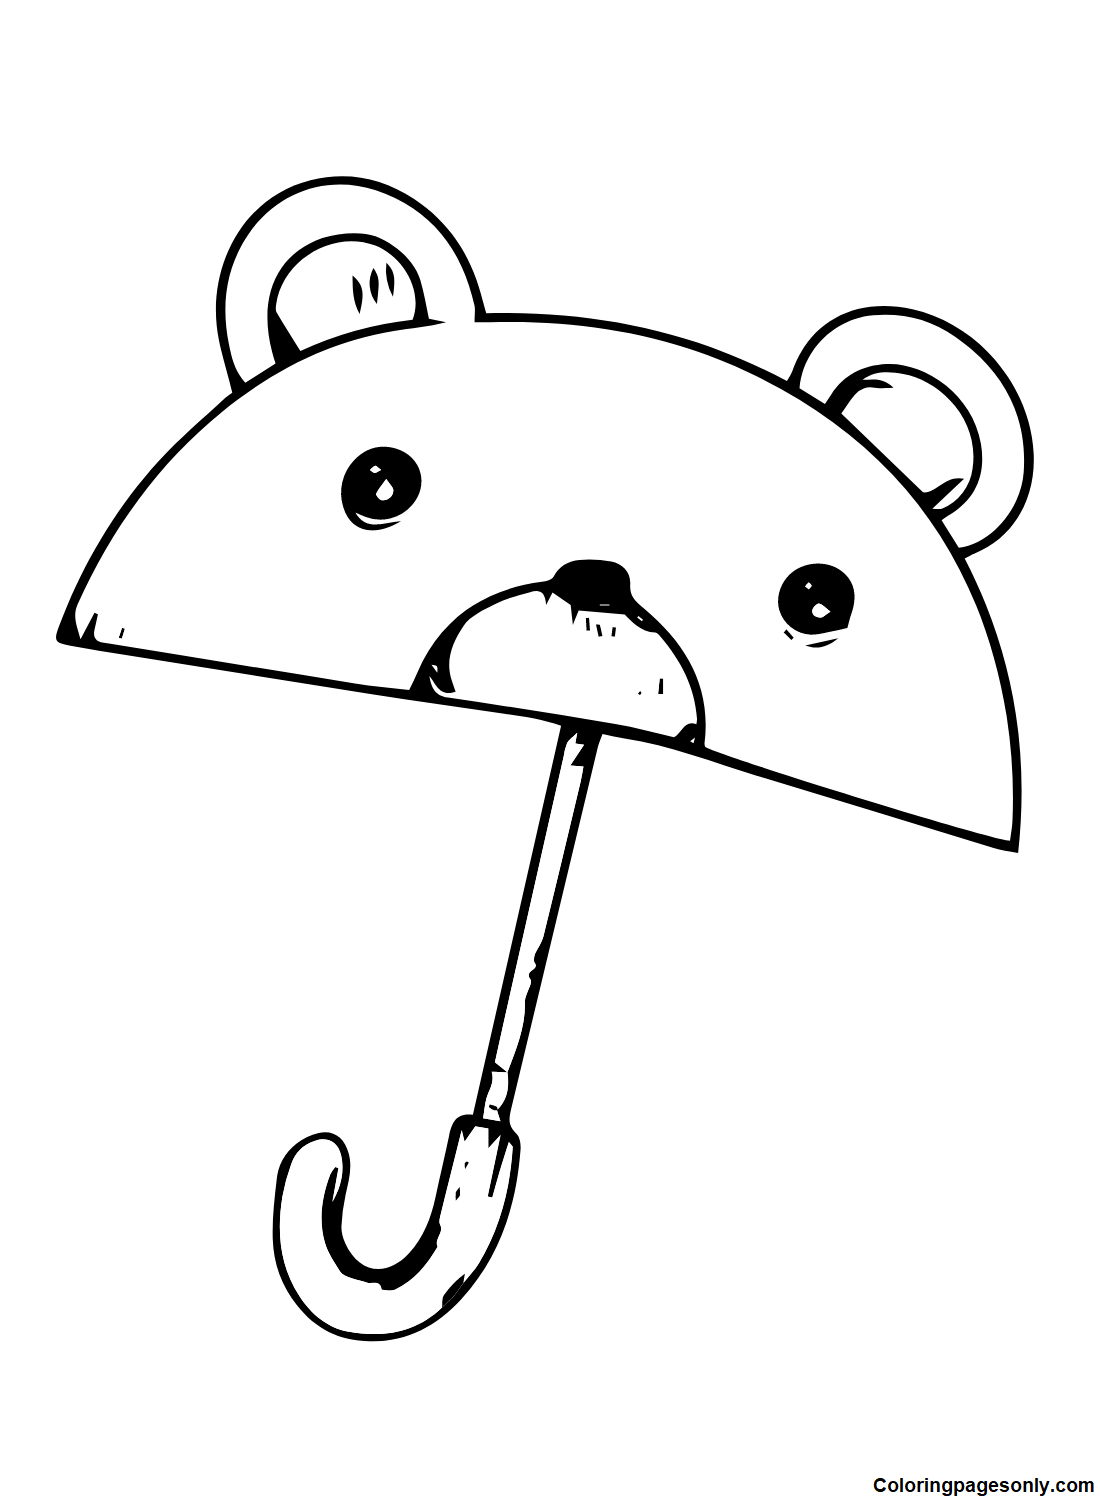 Guarda-chuva de urso from Umbrella